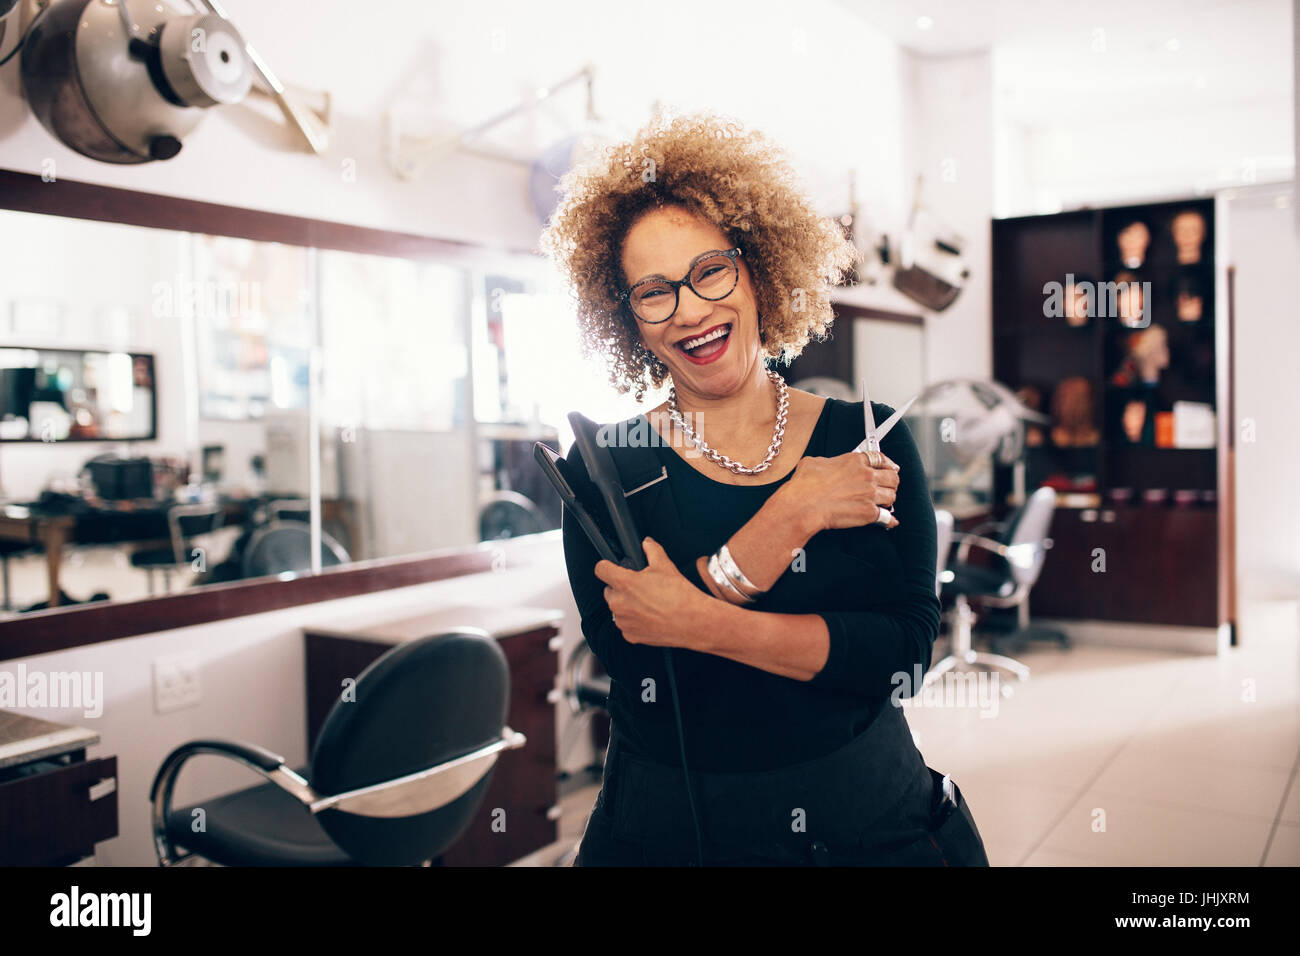 Lächelnde Frauen Friseur hält einen Haarglätter und Schere. Beauty-Salon mit professionellen Friseur gut ausgestattet. Stockfoto